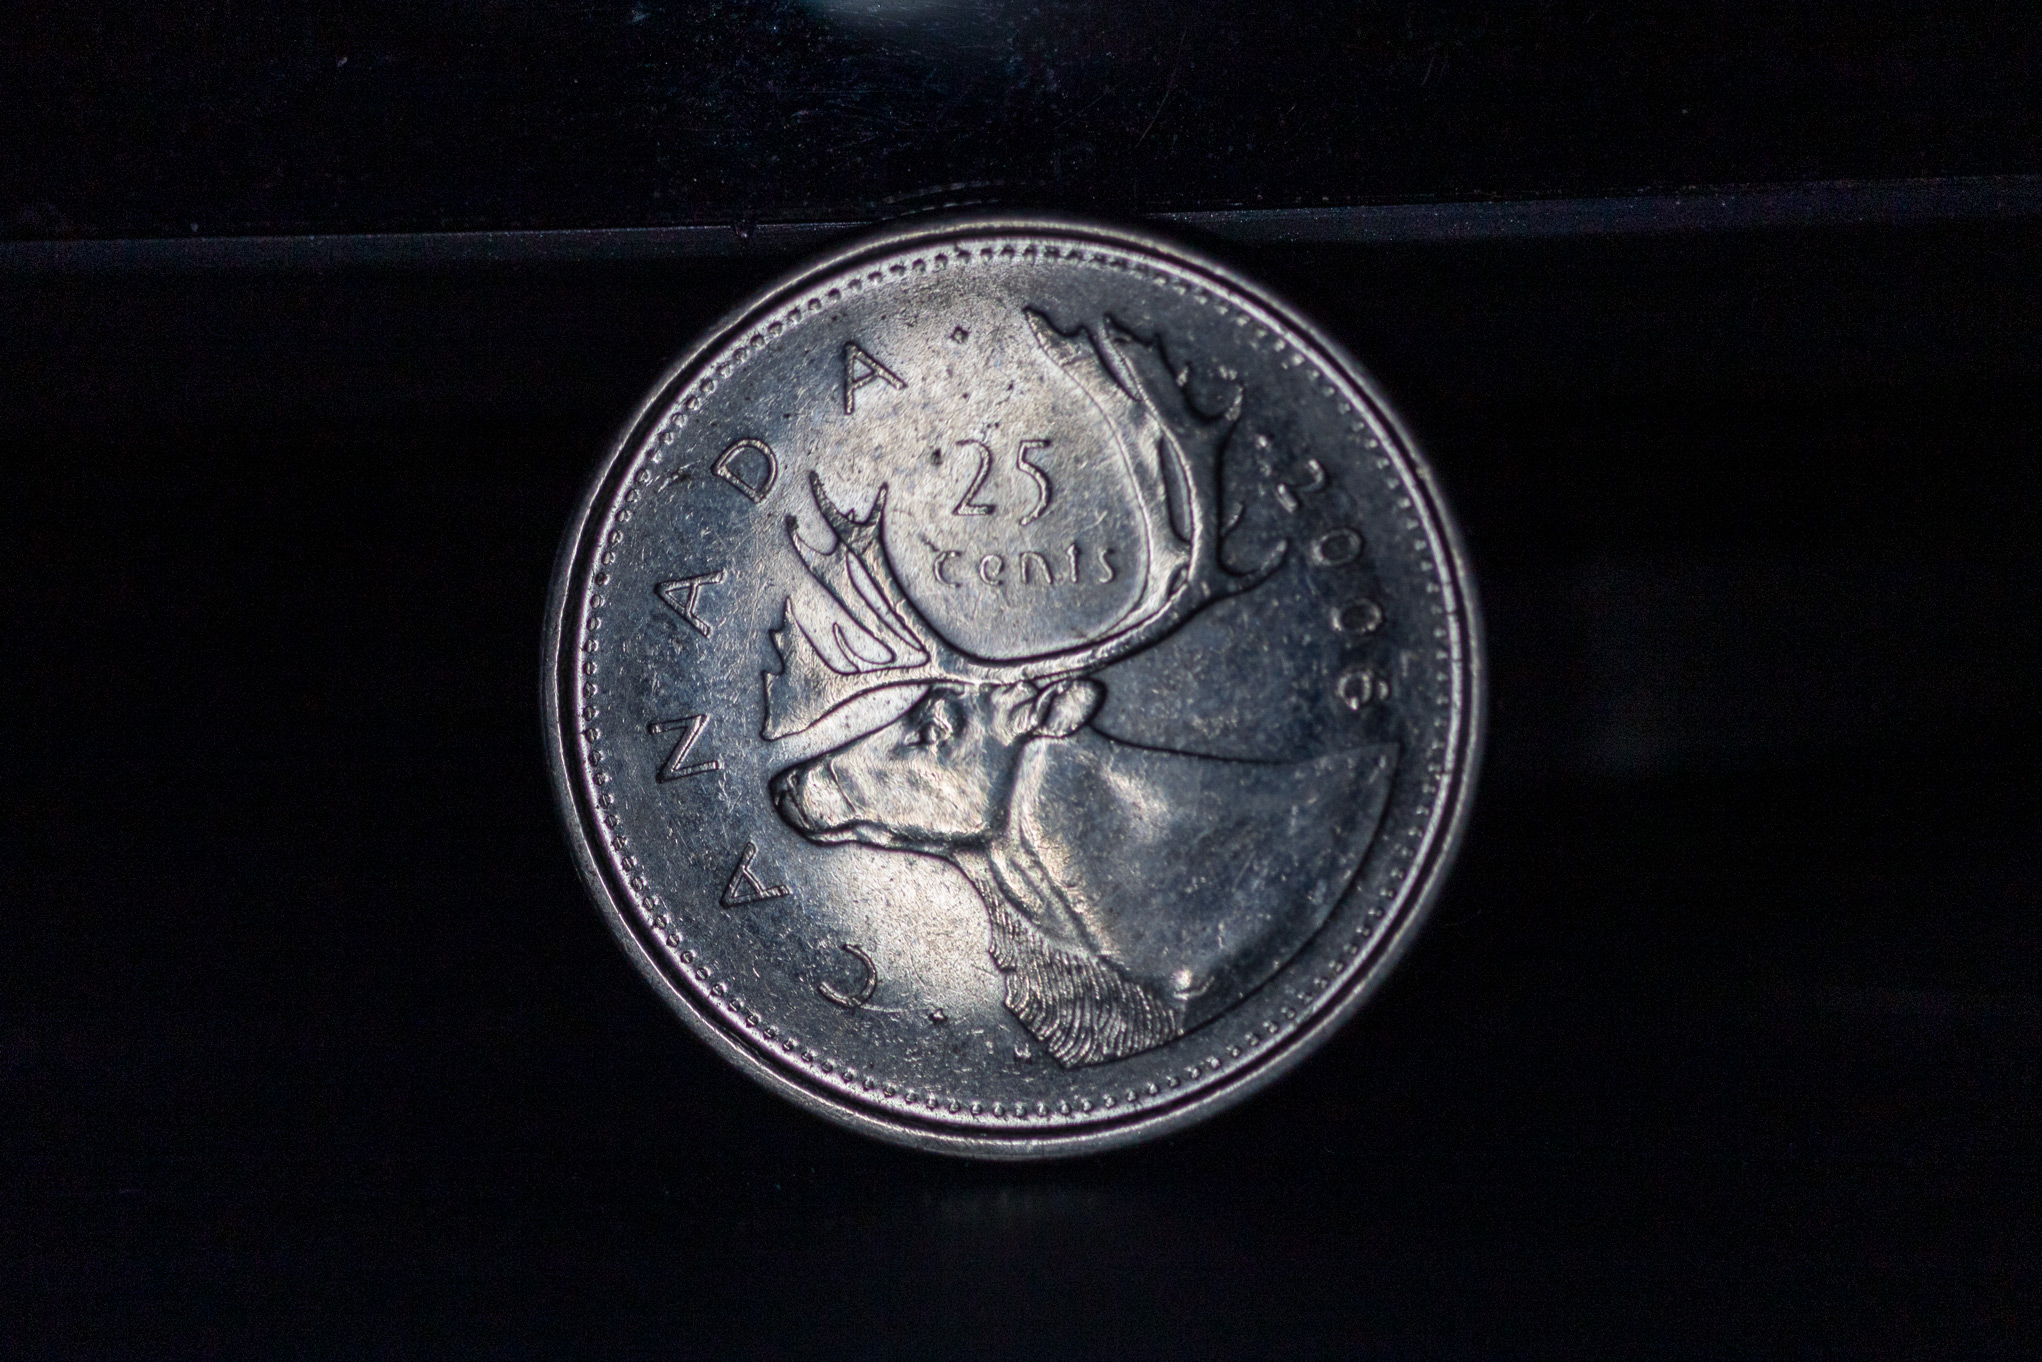 Close-up of a Canadian quarter